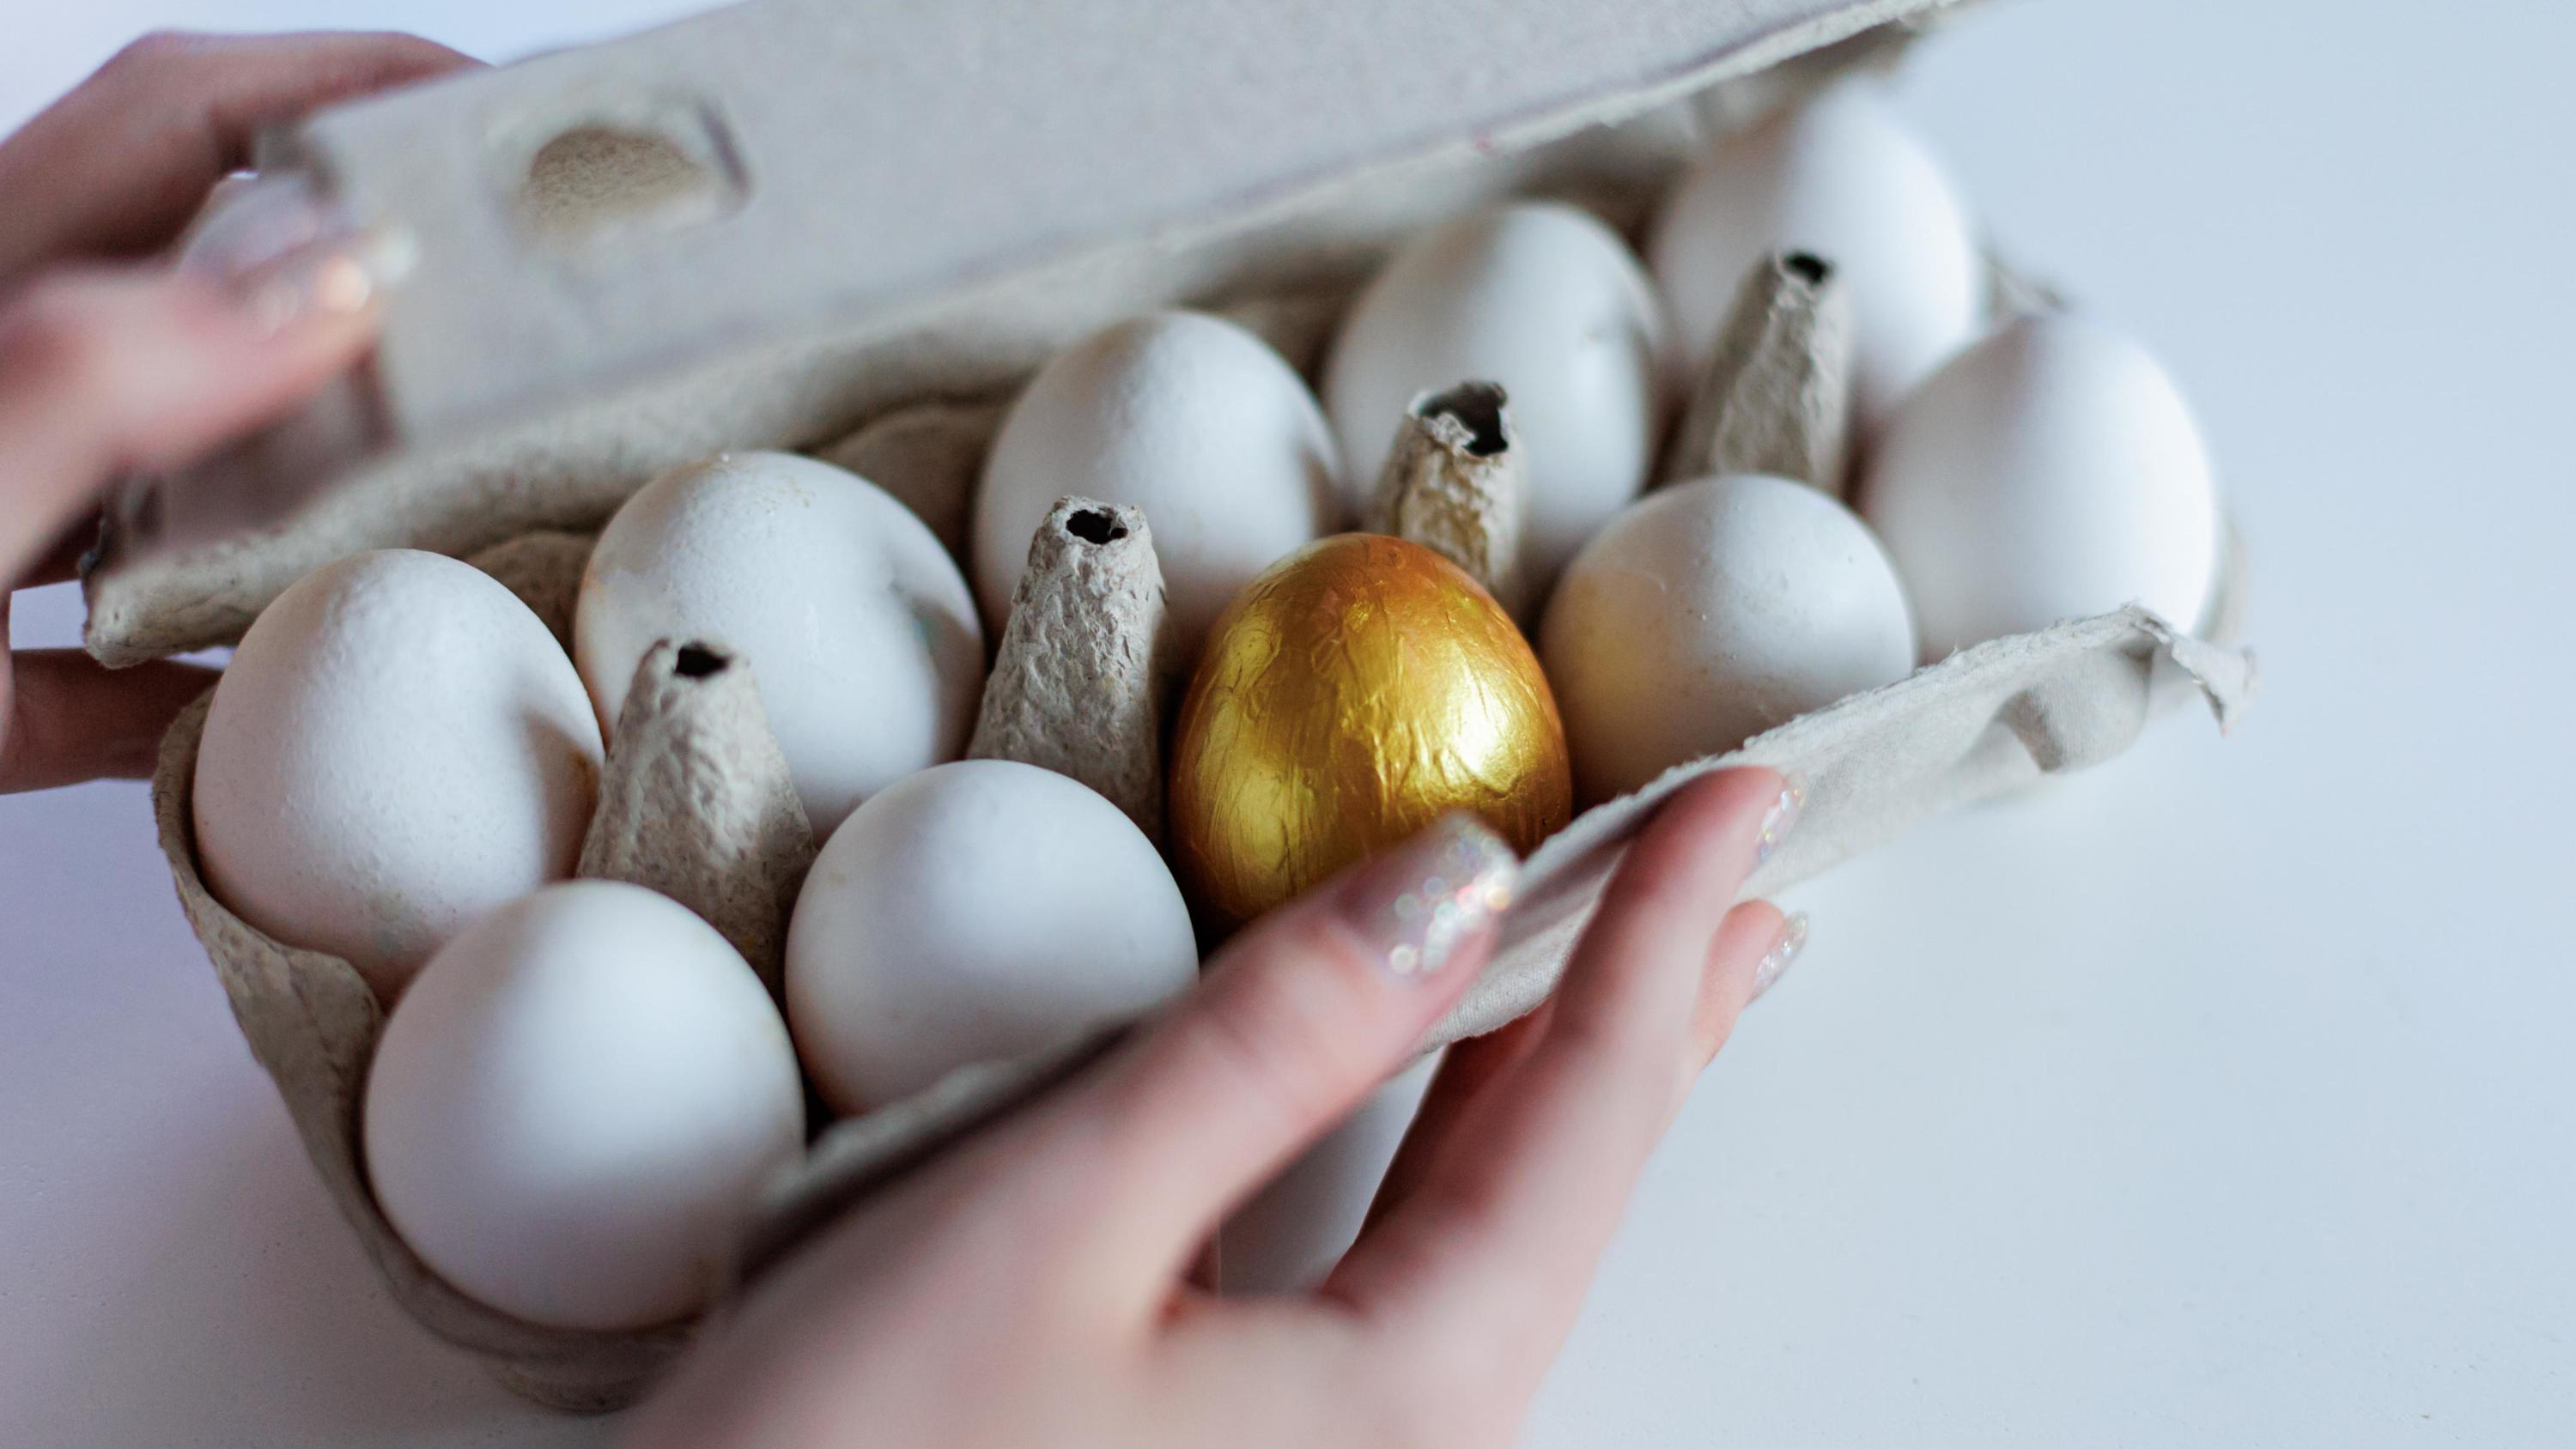 По сравнению с январем цены — норм! Сколько стоят яйца для пасхального стола в Иркутске и где купить, чтобы сэкономить